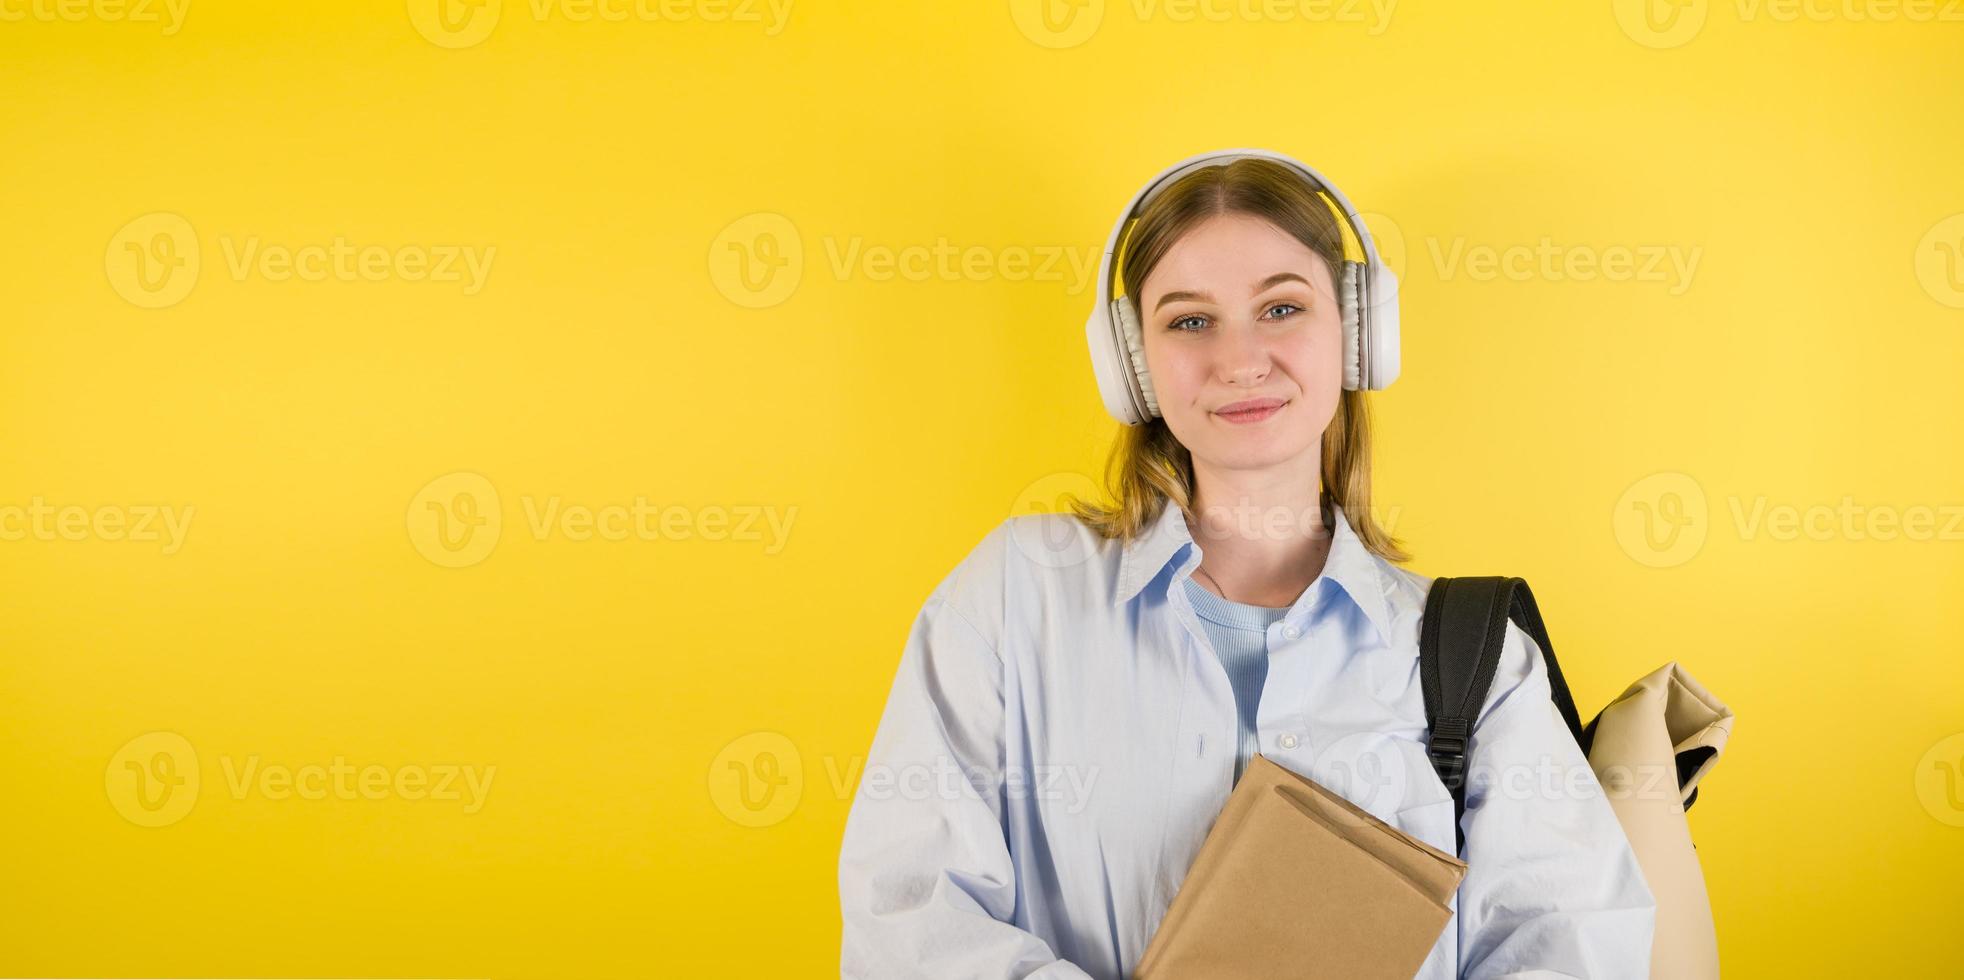 lächelnde kaukasische junge frau, die podcast oder musik in den kopfhörern hört und bücher hält. bildungskonzeptbanner mit platz für text.back to school university foto